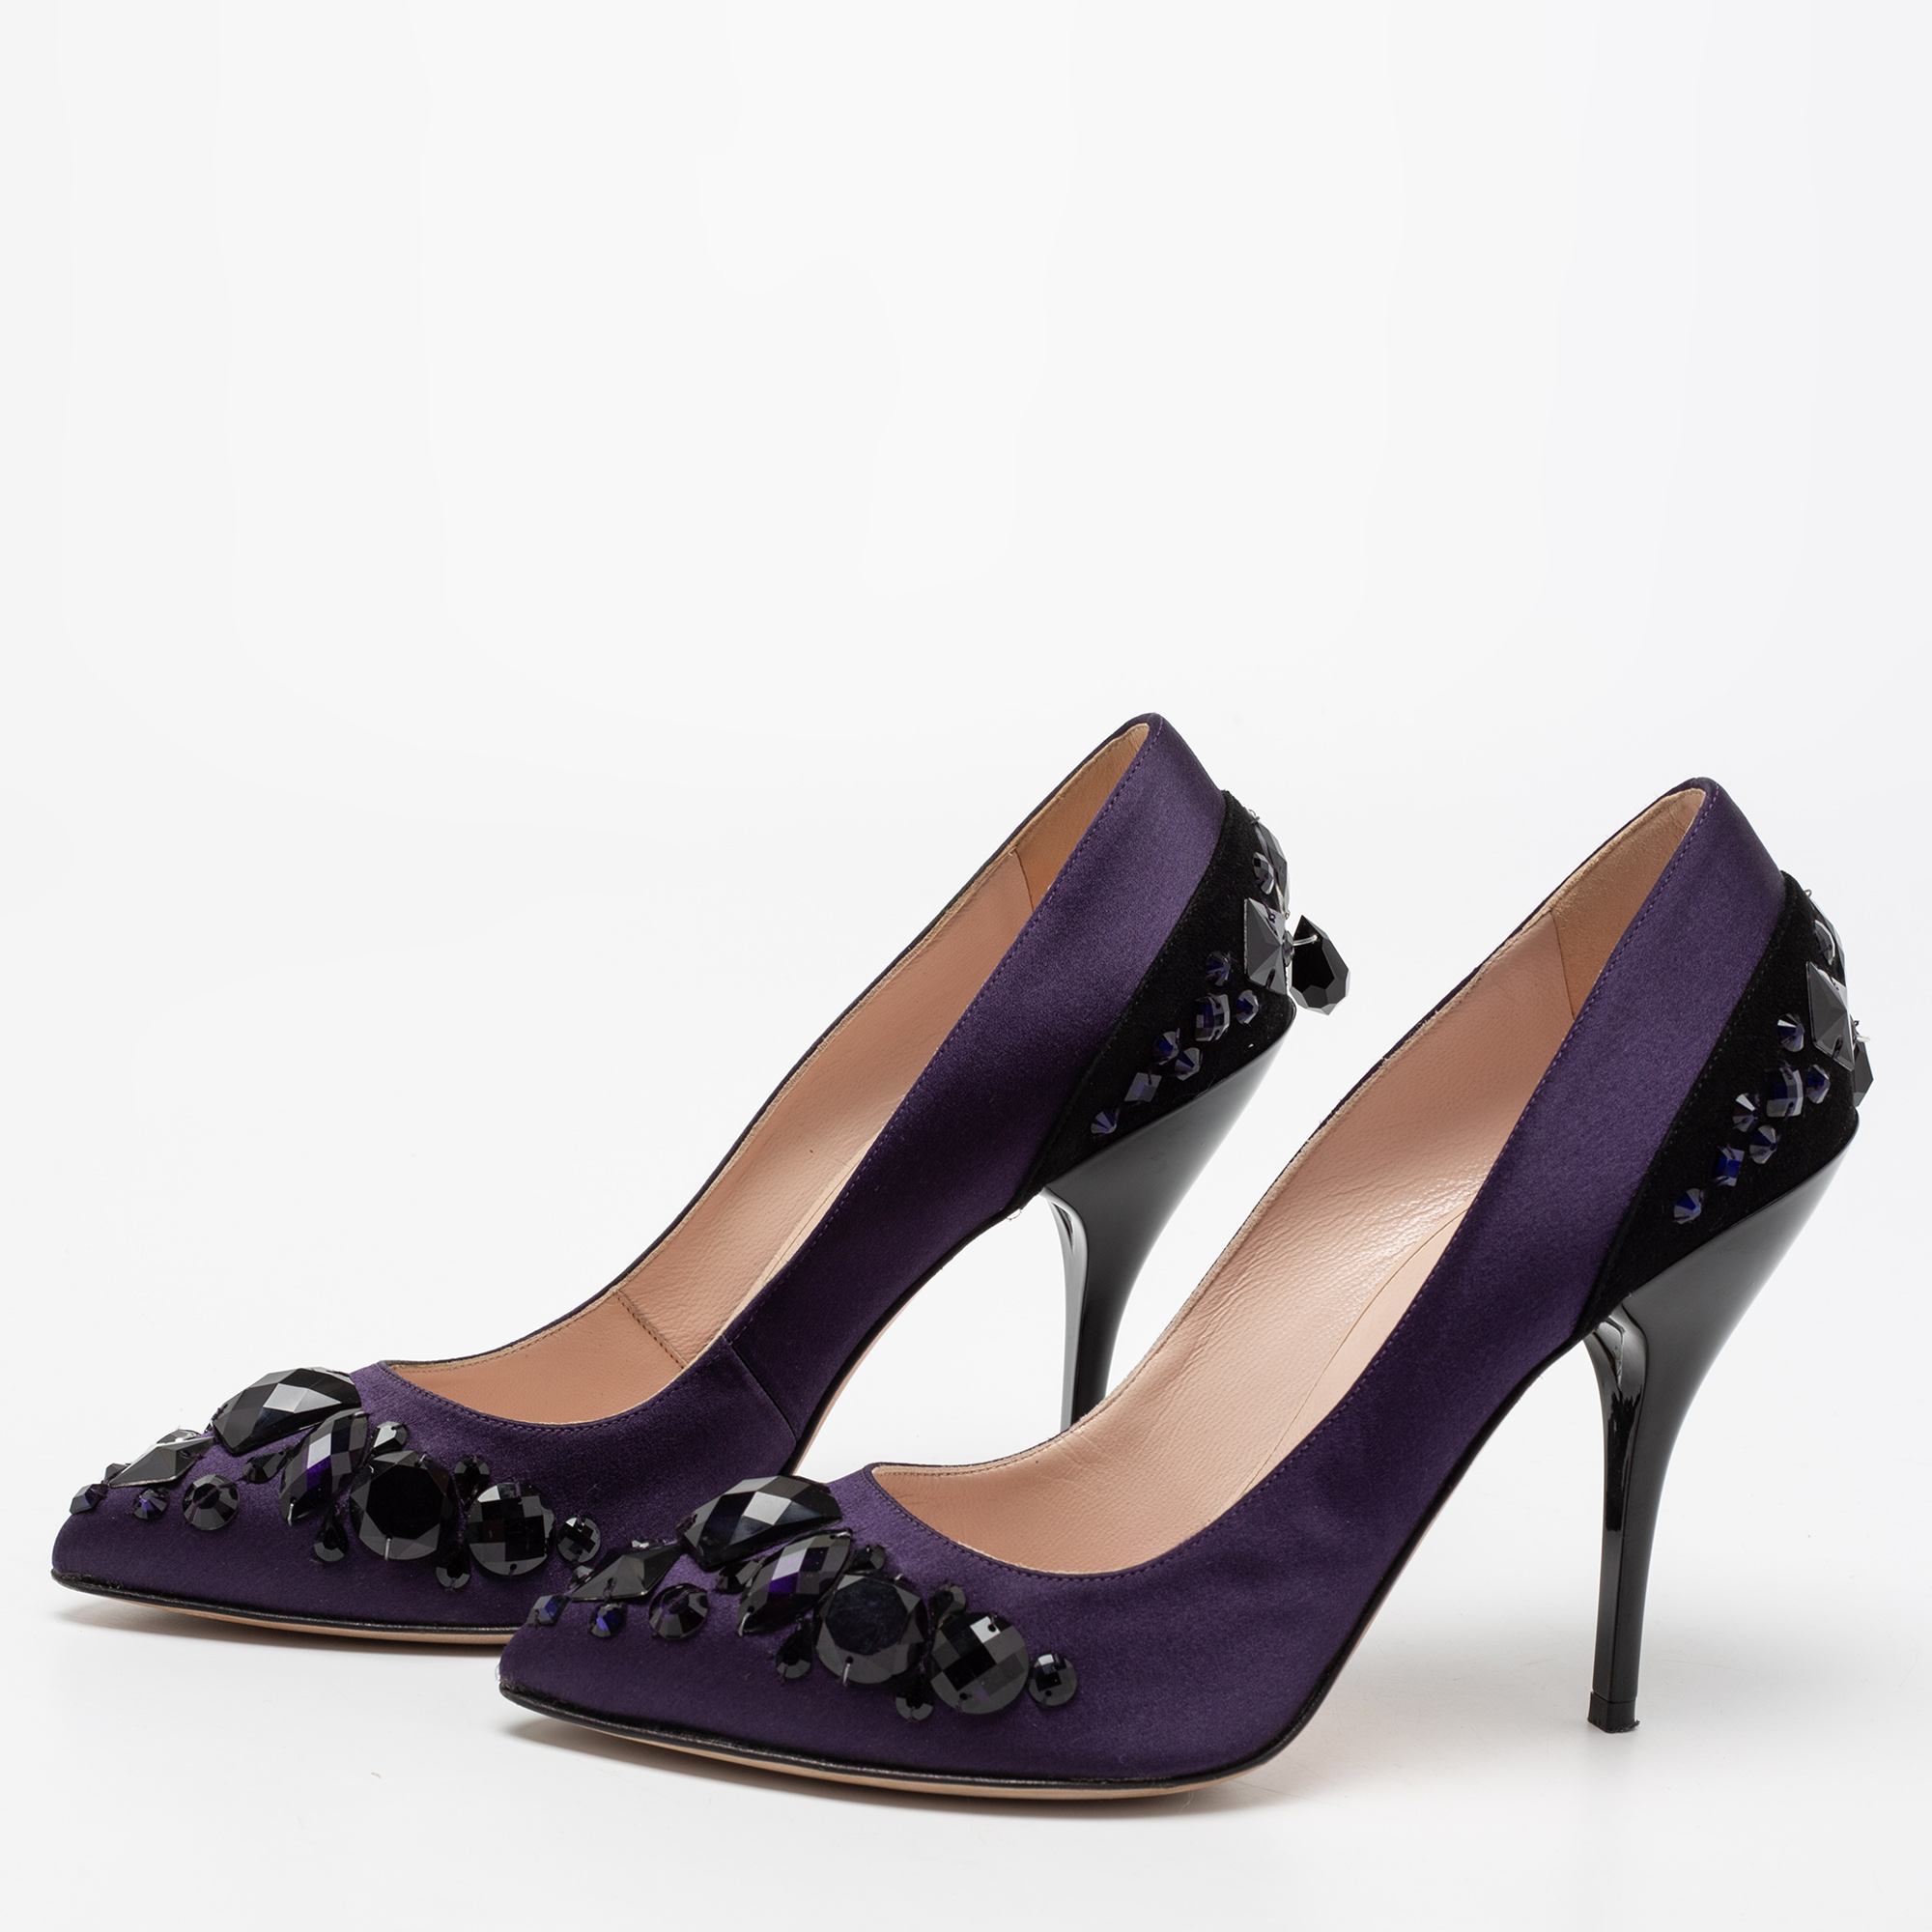 

Oscar de la Renta Purple/Black Satin And Suede Crystal Embellished Pointed Toe Pumps Size